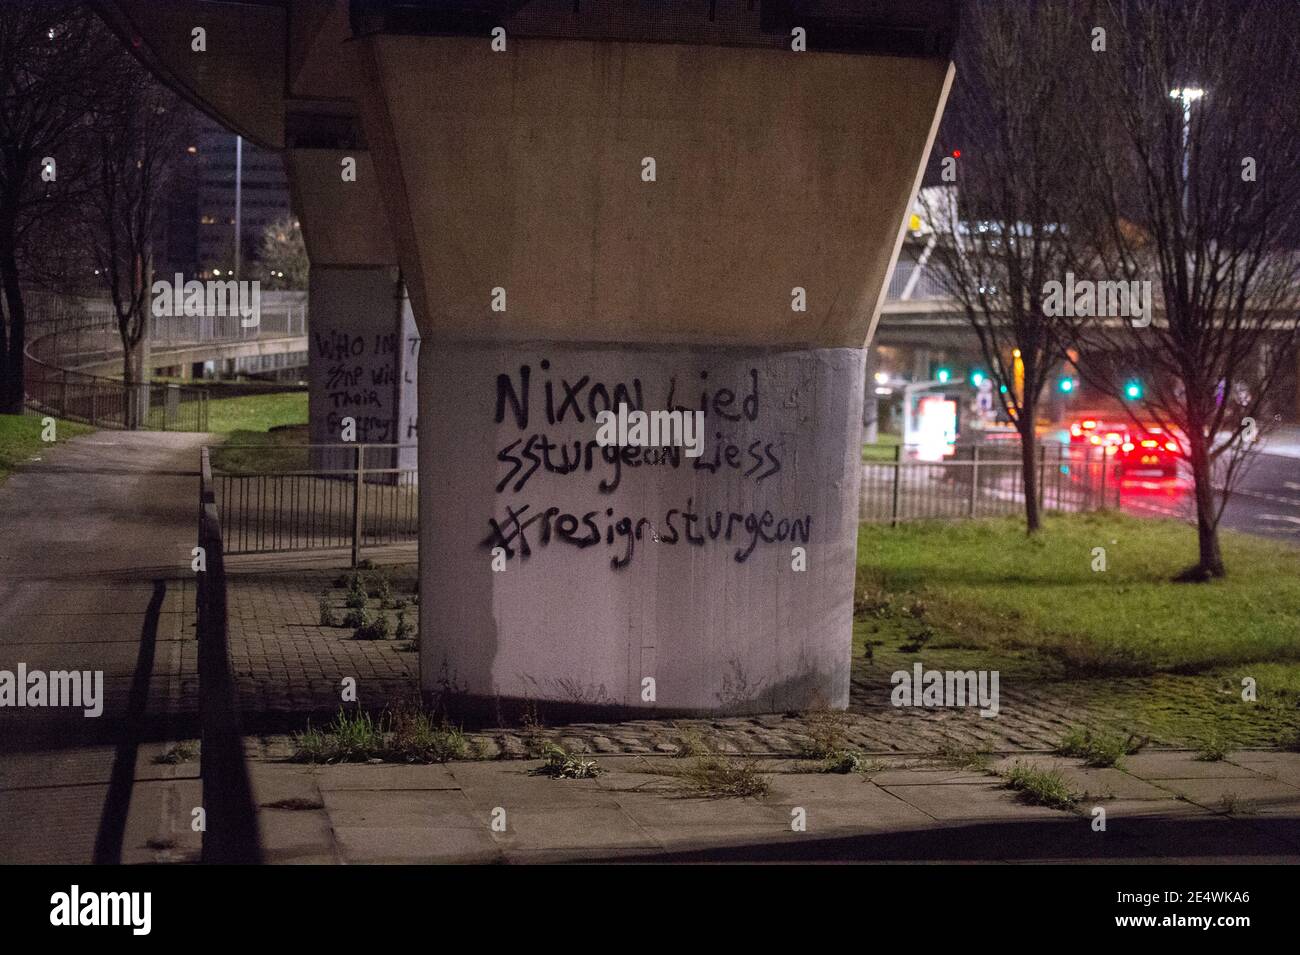 Glasgow, Schottland, Großbritannien. Januar 2021. Im Bild: Glasgower politischer Graffiti-Künstler, der nur als ‘Clydebanksy' bekannt ist, der sich vom Namen Banksy the artist inspirieren lässt, wird ein Slogan auf eine der Säulen der Kingston Bridge sprühen sehen, der lautet: „NIXON LIED SSTURGEON LIESS #RESIGN STÖR“. Er hat im Schutzstaffel AKA das Doppel ‘SS' in den Worten ‘Sturgeon' und das Wort ‘Lügen' gemalt, um darauf hinzuweisen, wie er fühlt, dass die SNP das Land führen. Quelle: Colin Fisher/Alamy Live News Stockfoto